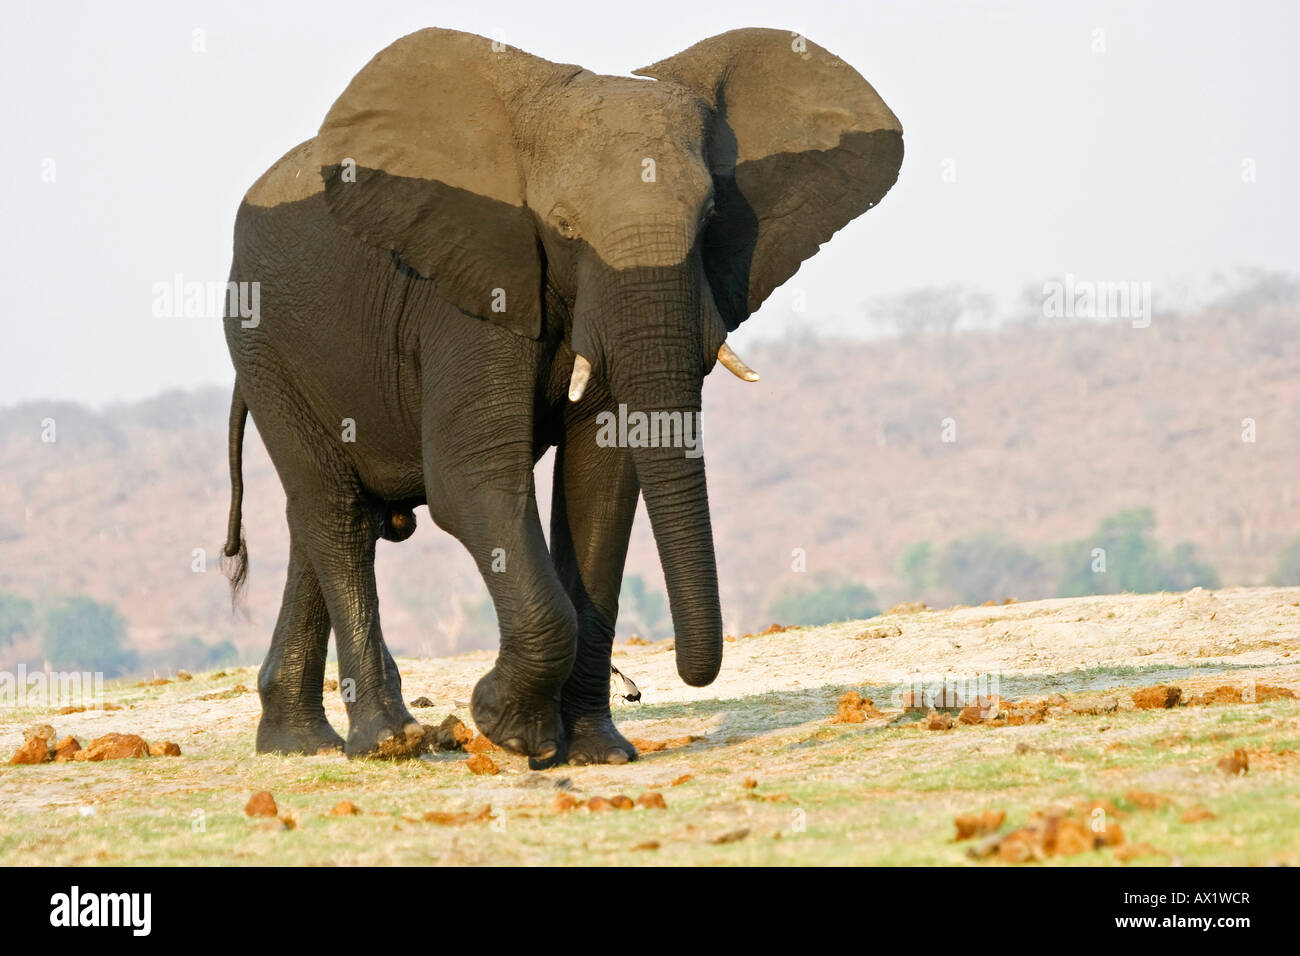 African elephant (Loxodonta africana), Chobe National Park, Botswana, Africa Stock Photo